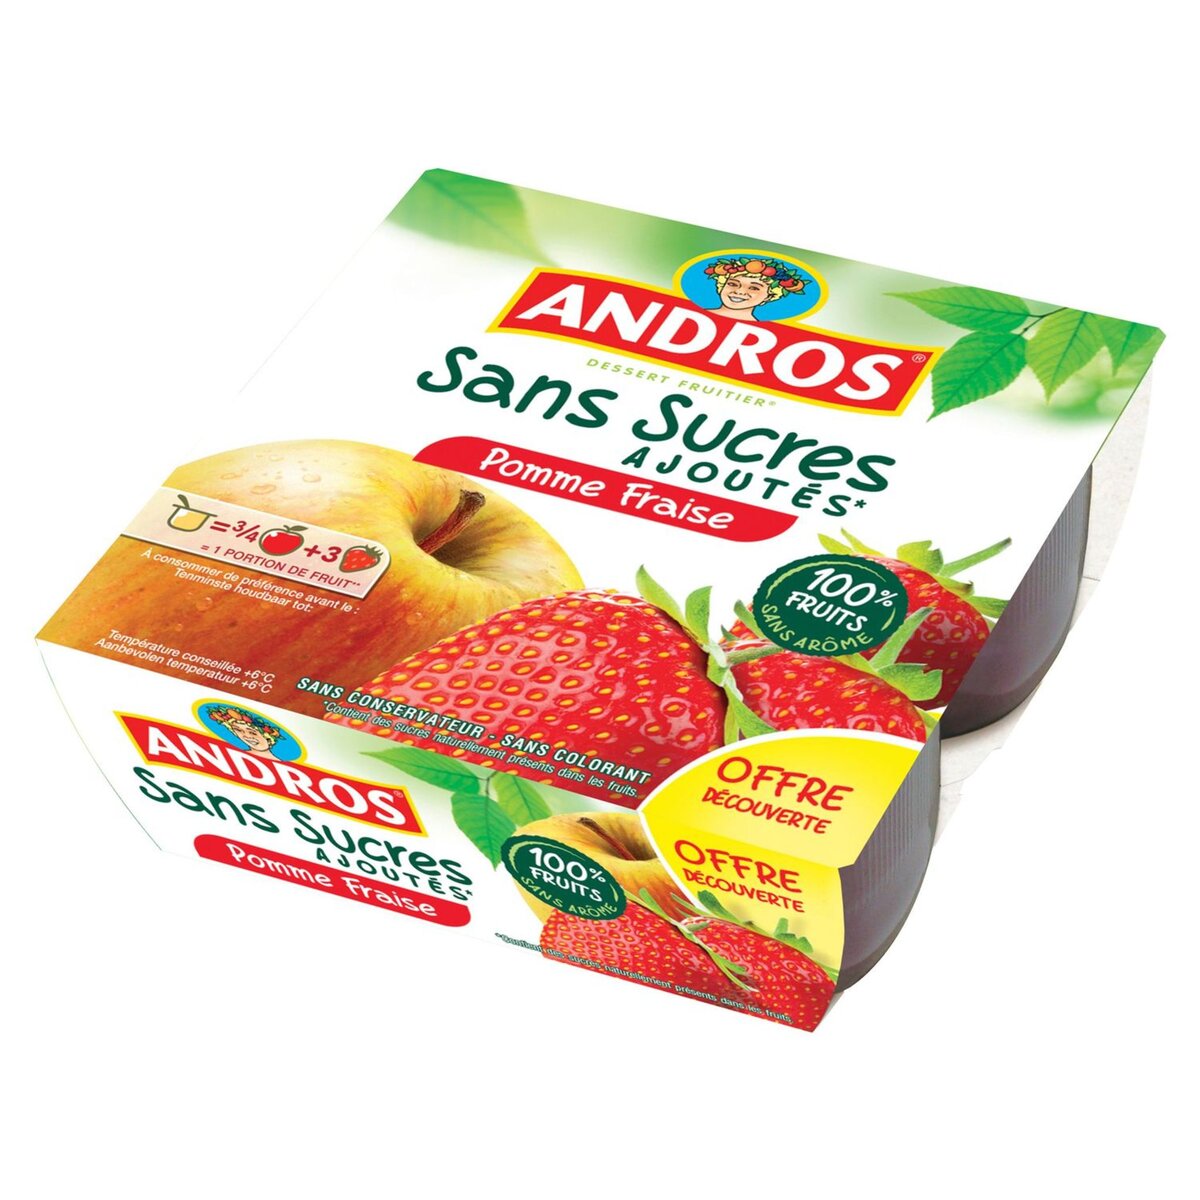 ANDROS Spécialité pomme fraise sans sucres ajoutés 4x100g pas cher 